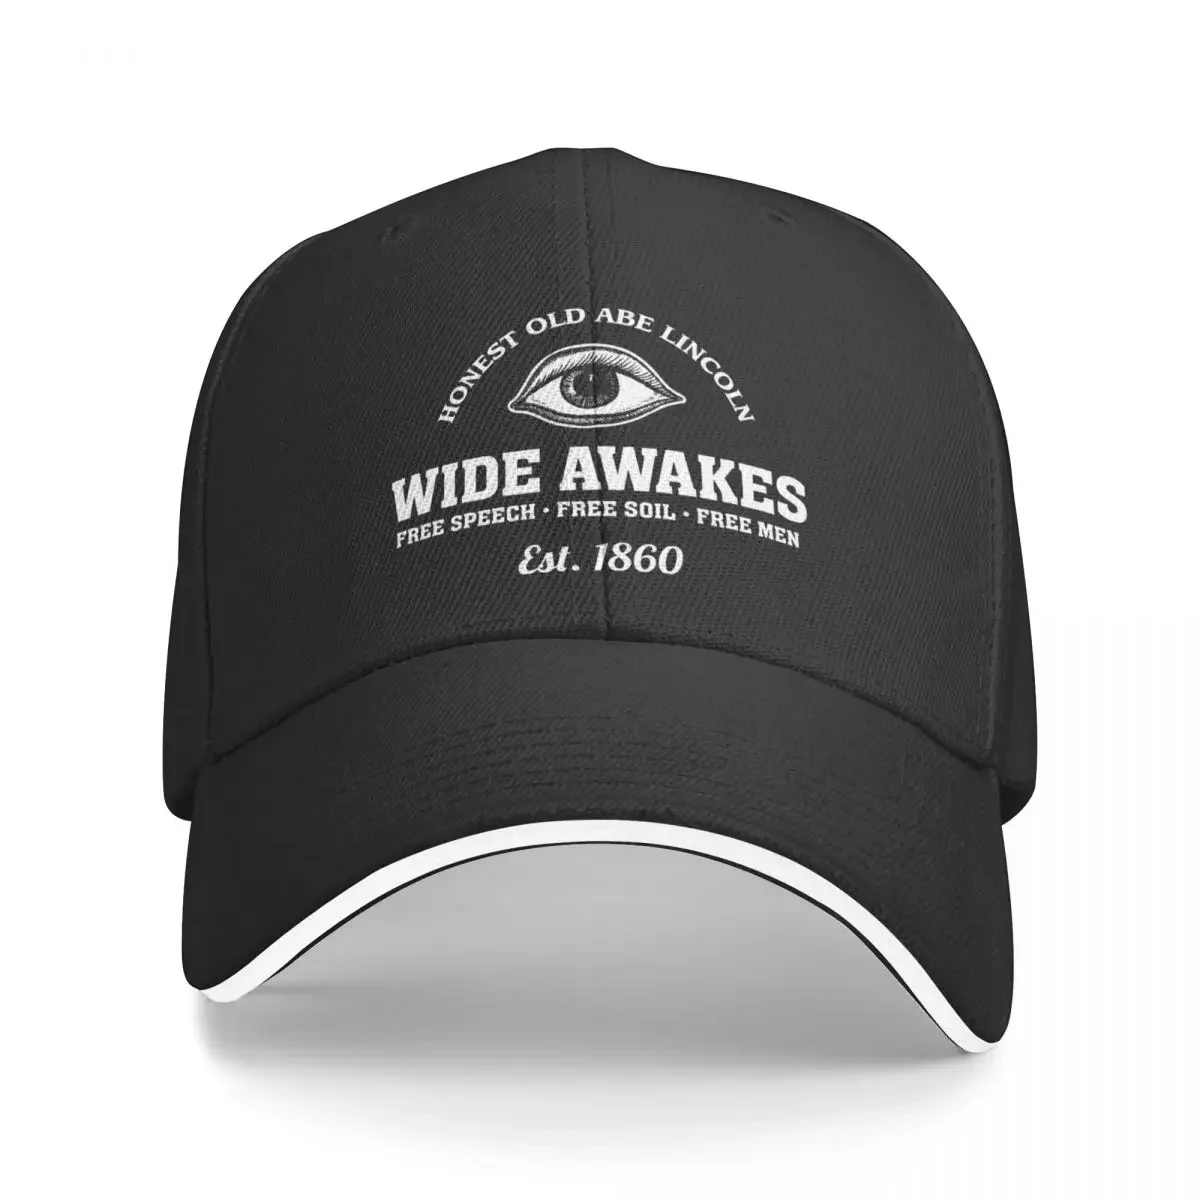 

New Wide Awakes Free Speech Free Soil Free Men Honest Old Abe Lincoln BW Baseball Cap cute Bobble Hat Caps For Women Men's